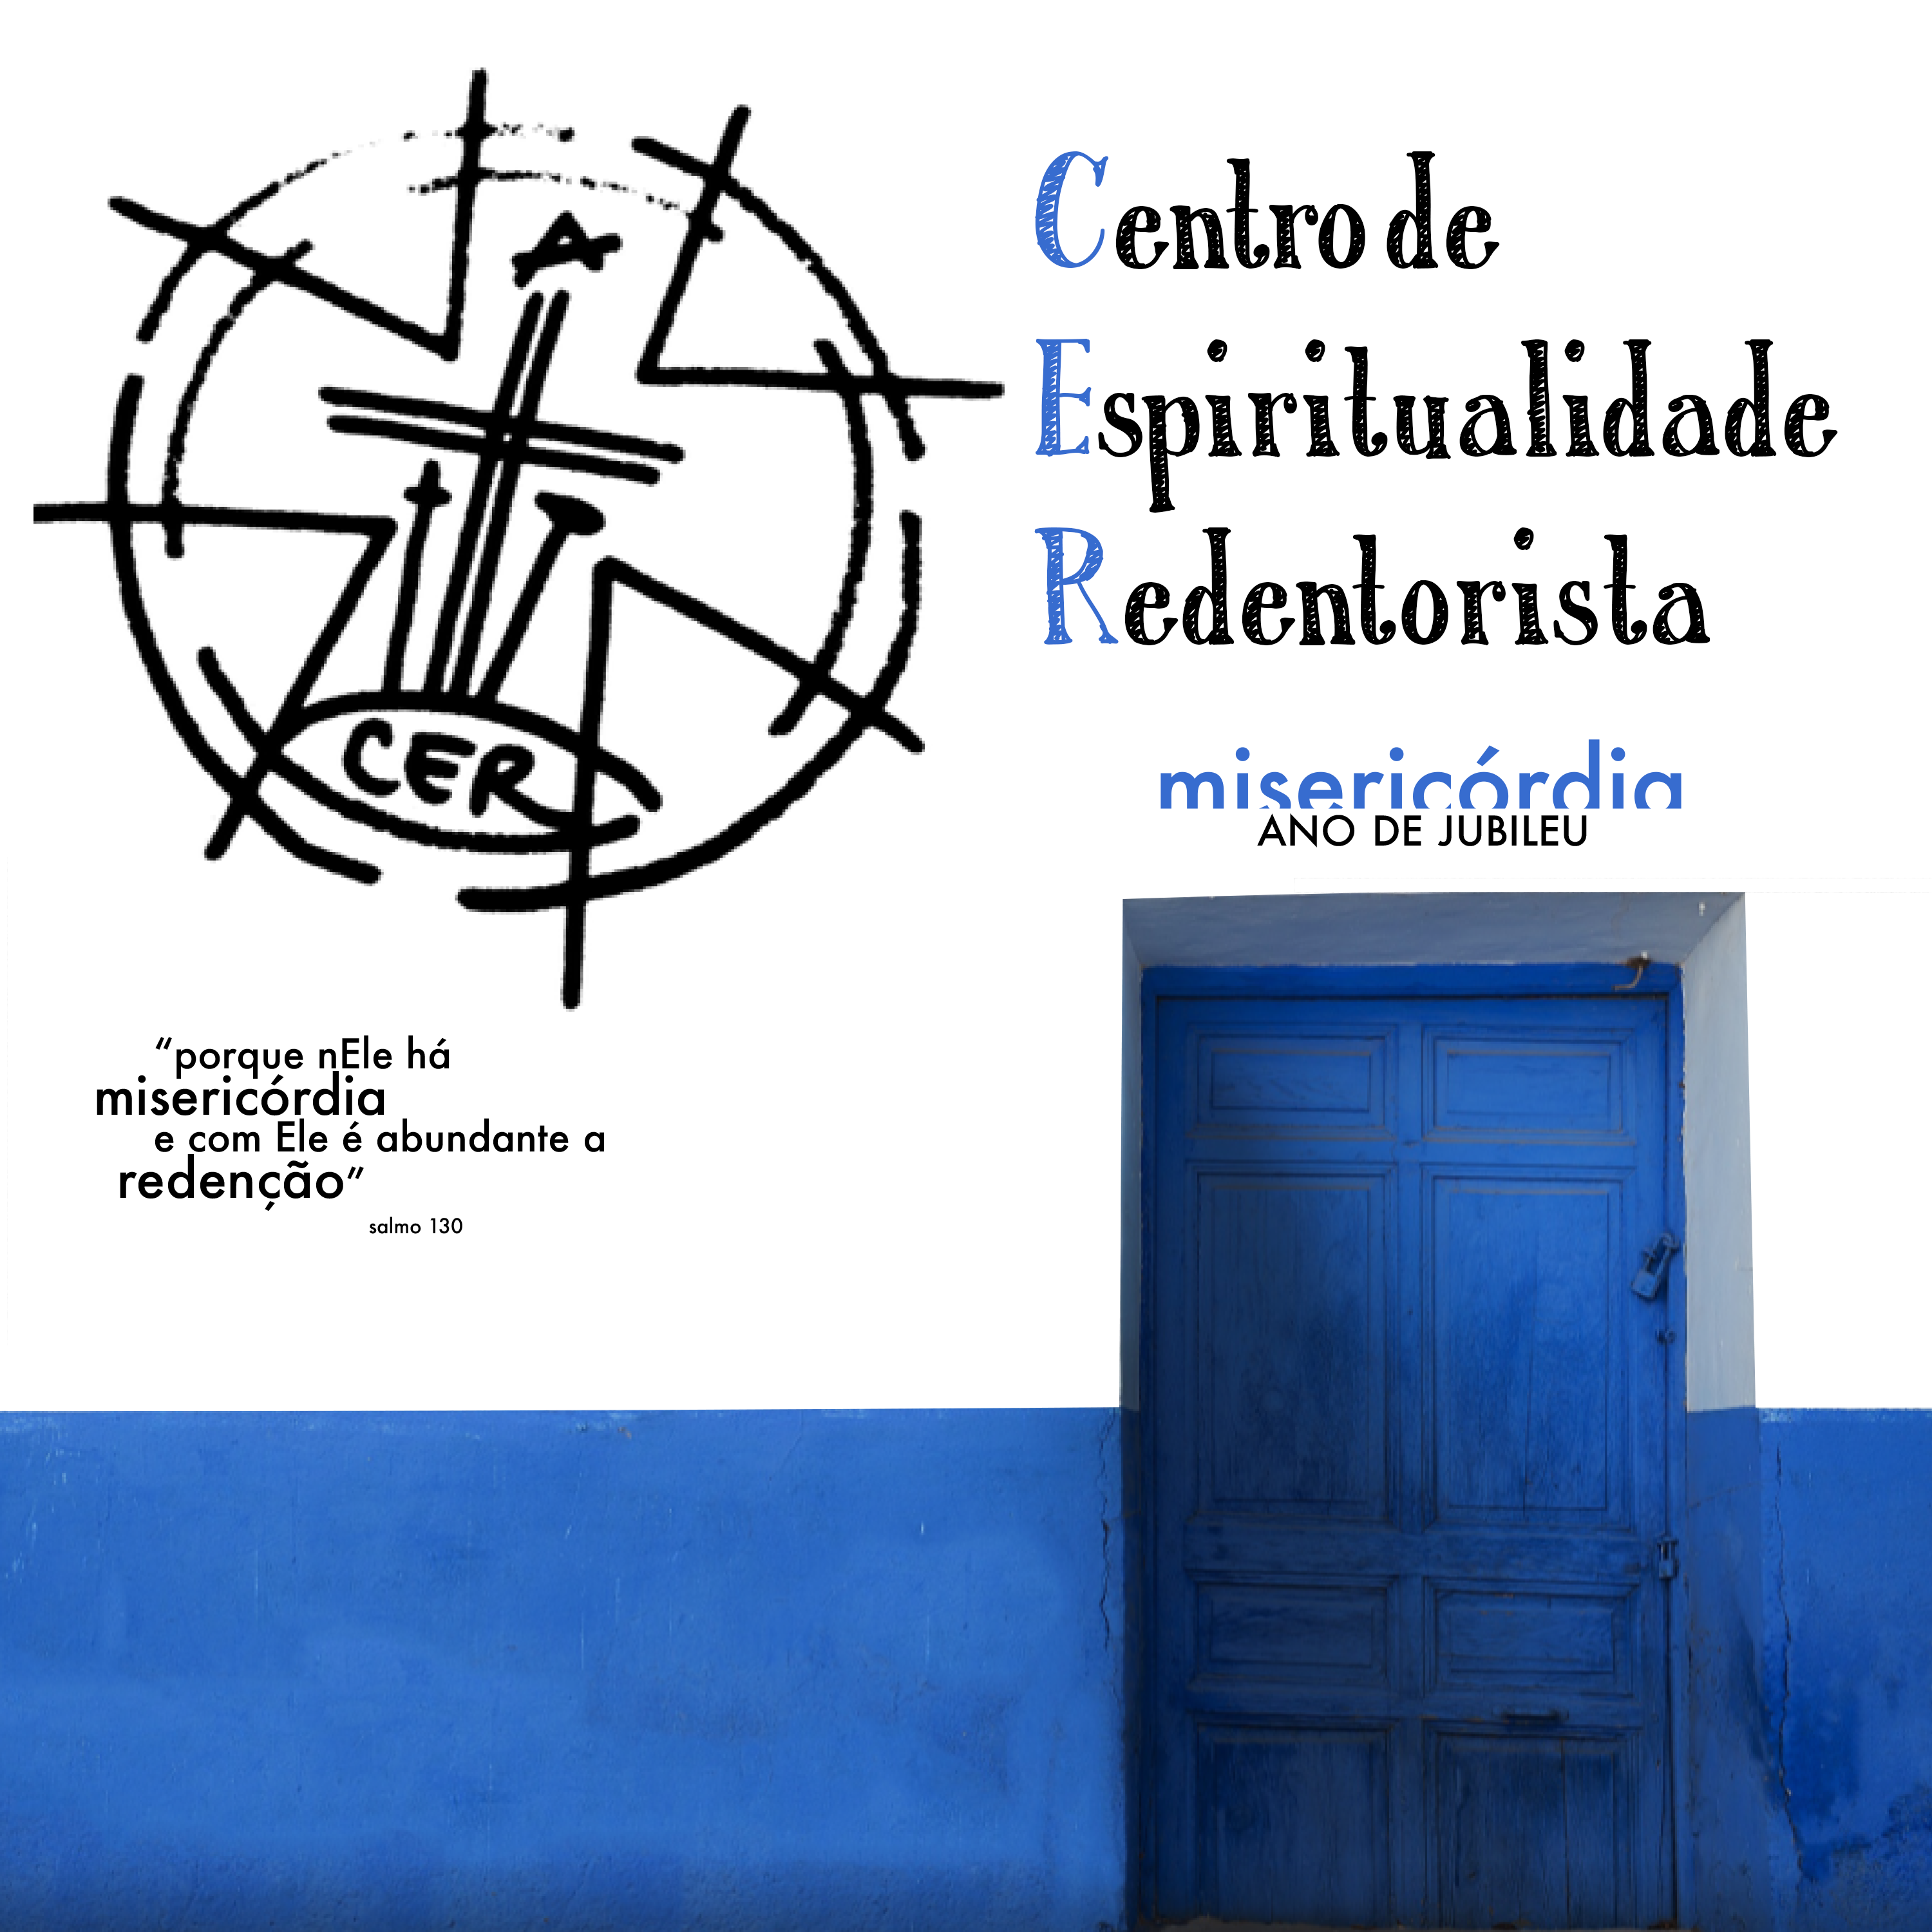 CER - Centro de Espiritualidade Redentorista